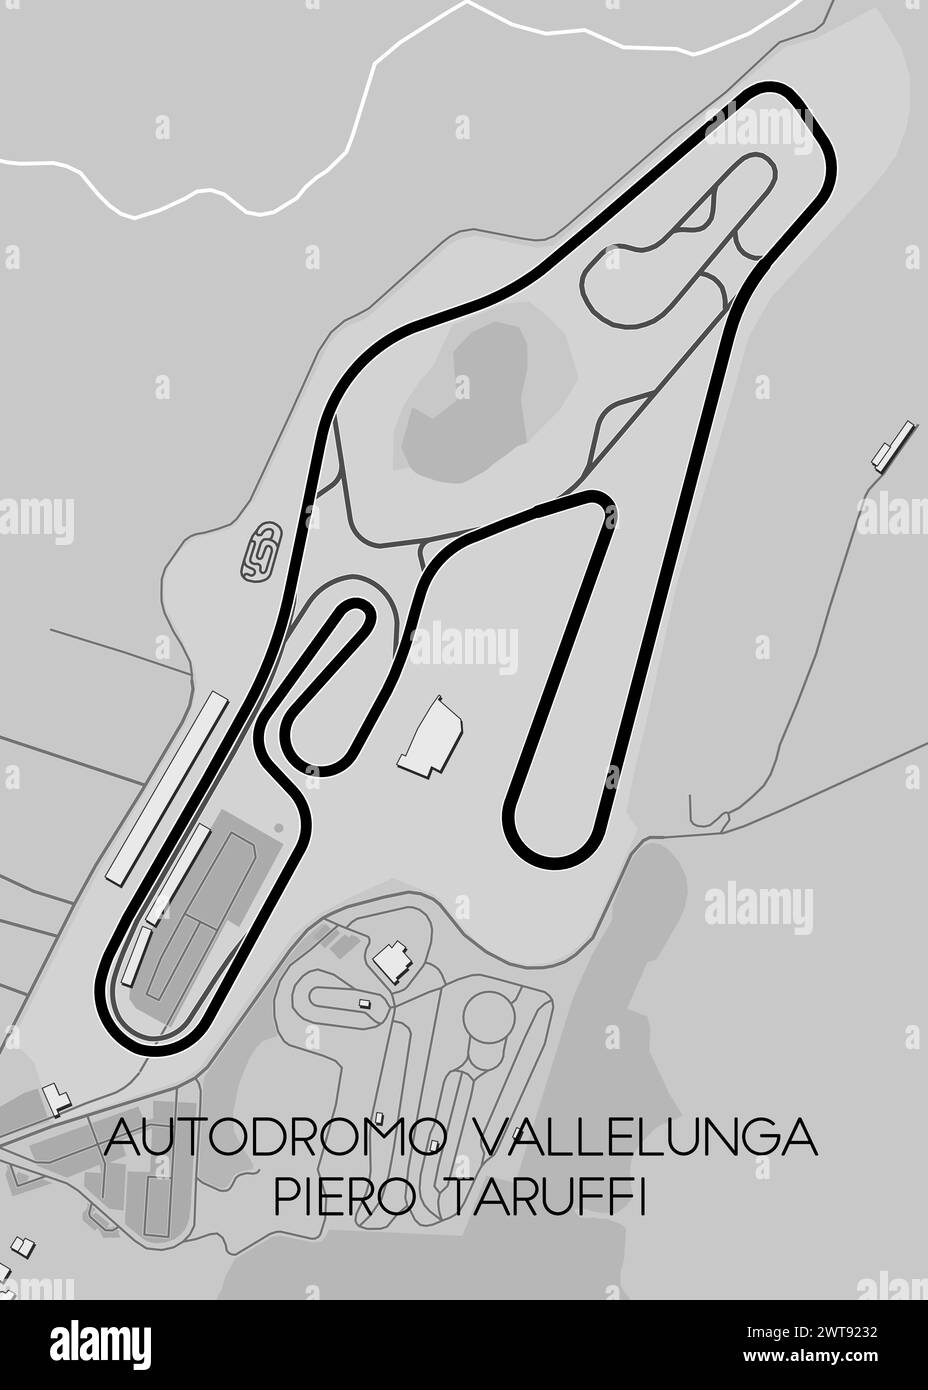 Autodromo Vallelunga Piero Taruffi cartina delle corse Illustrazione Vettoriale